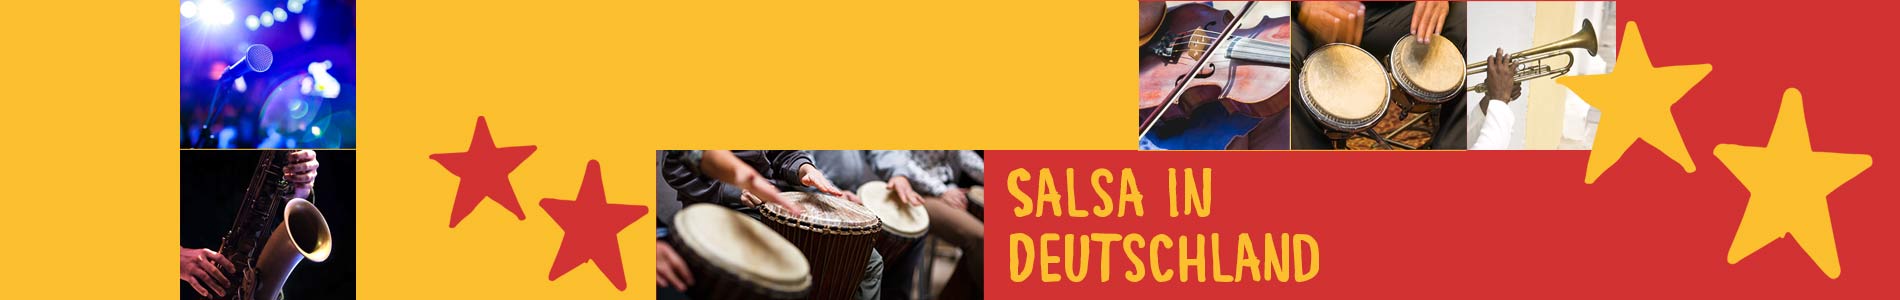 Salsa in Breitscheidt – Salsa lernen und tanzen, Tanzkurse, Partys, Veranstaltungen